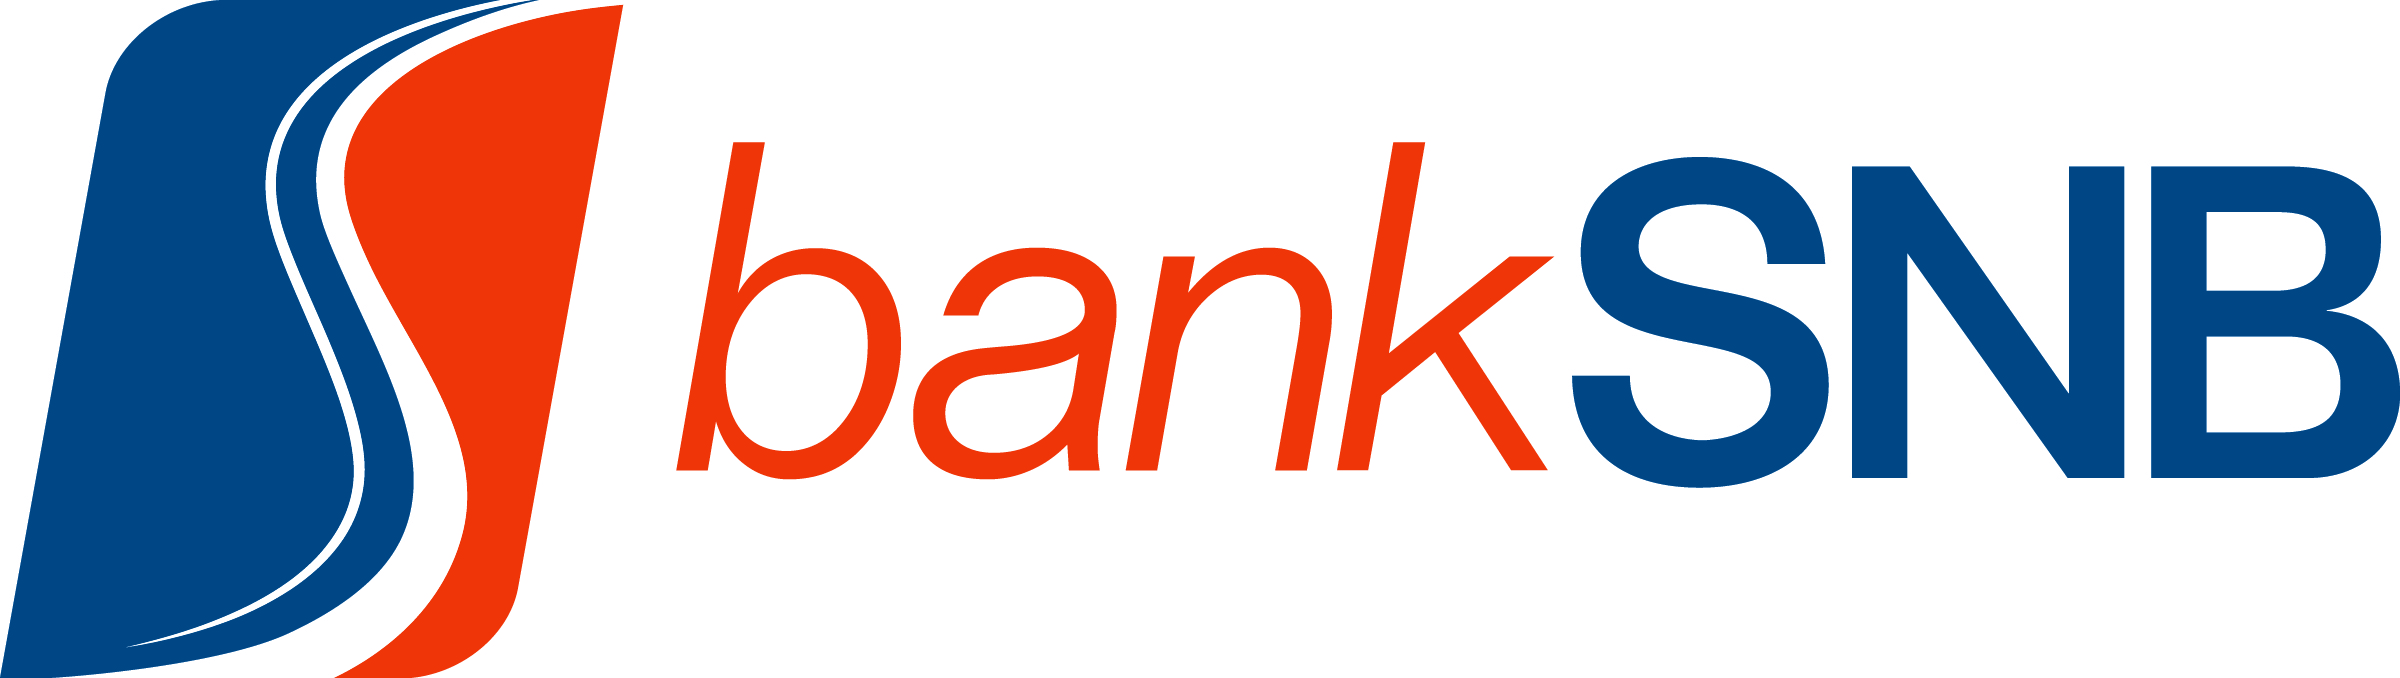 Bank SNB horizontal logo